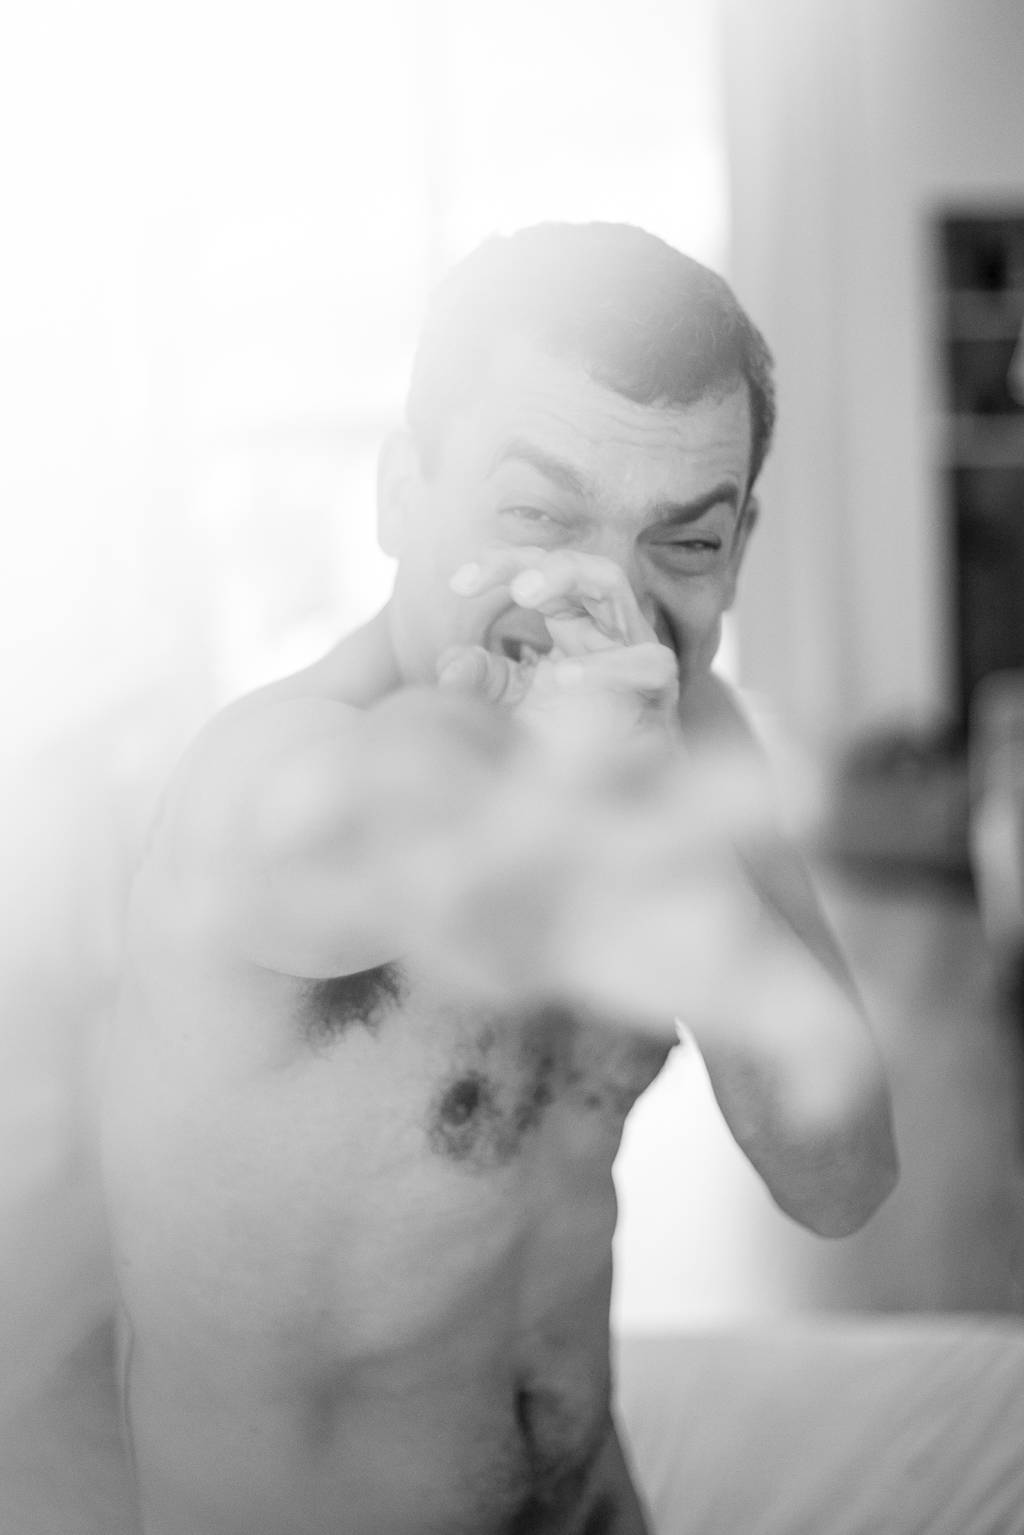 Alexandre Lino com as mãos na frente do rosto, em foto em preto e branco